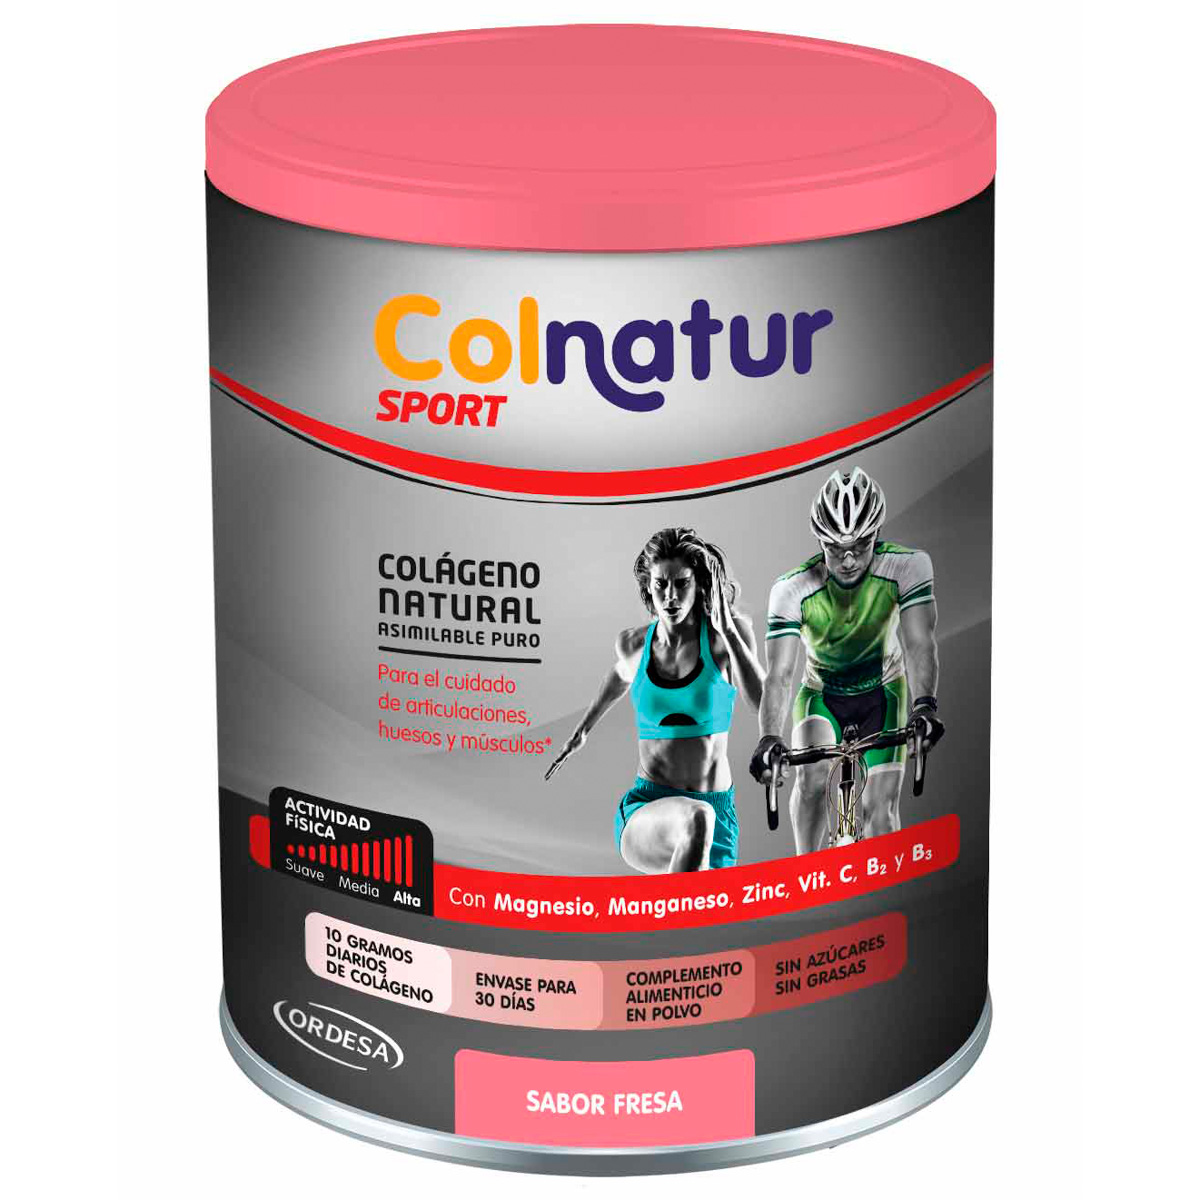 Colnatur Sport sabor Neutro - Colnatur - 330 gramos